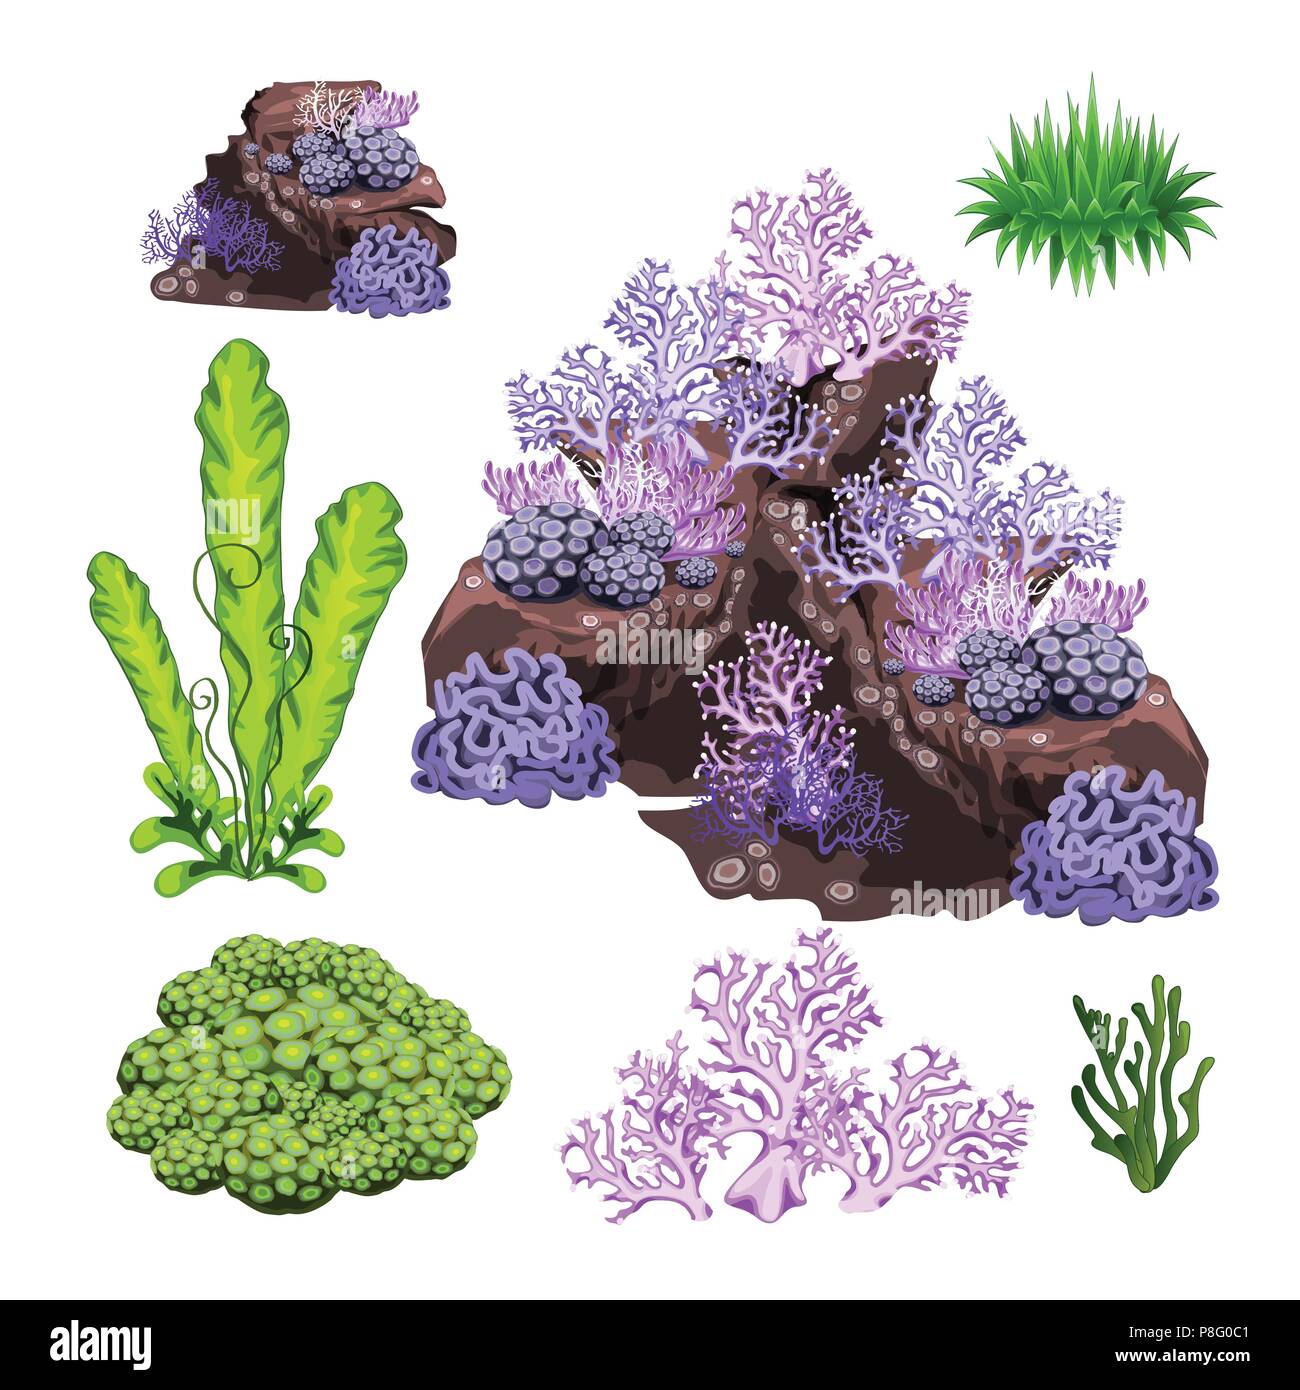 L'ensemble des algues, coraux et rochers sous l'eau isolé sur fond blanc. Cartoon Vector illustration close-up. Illustration de Vecteur